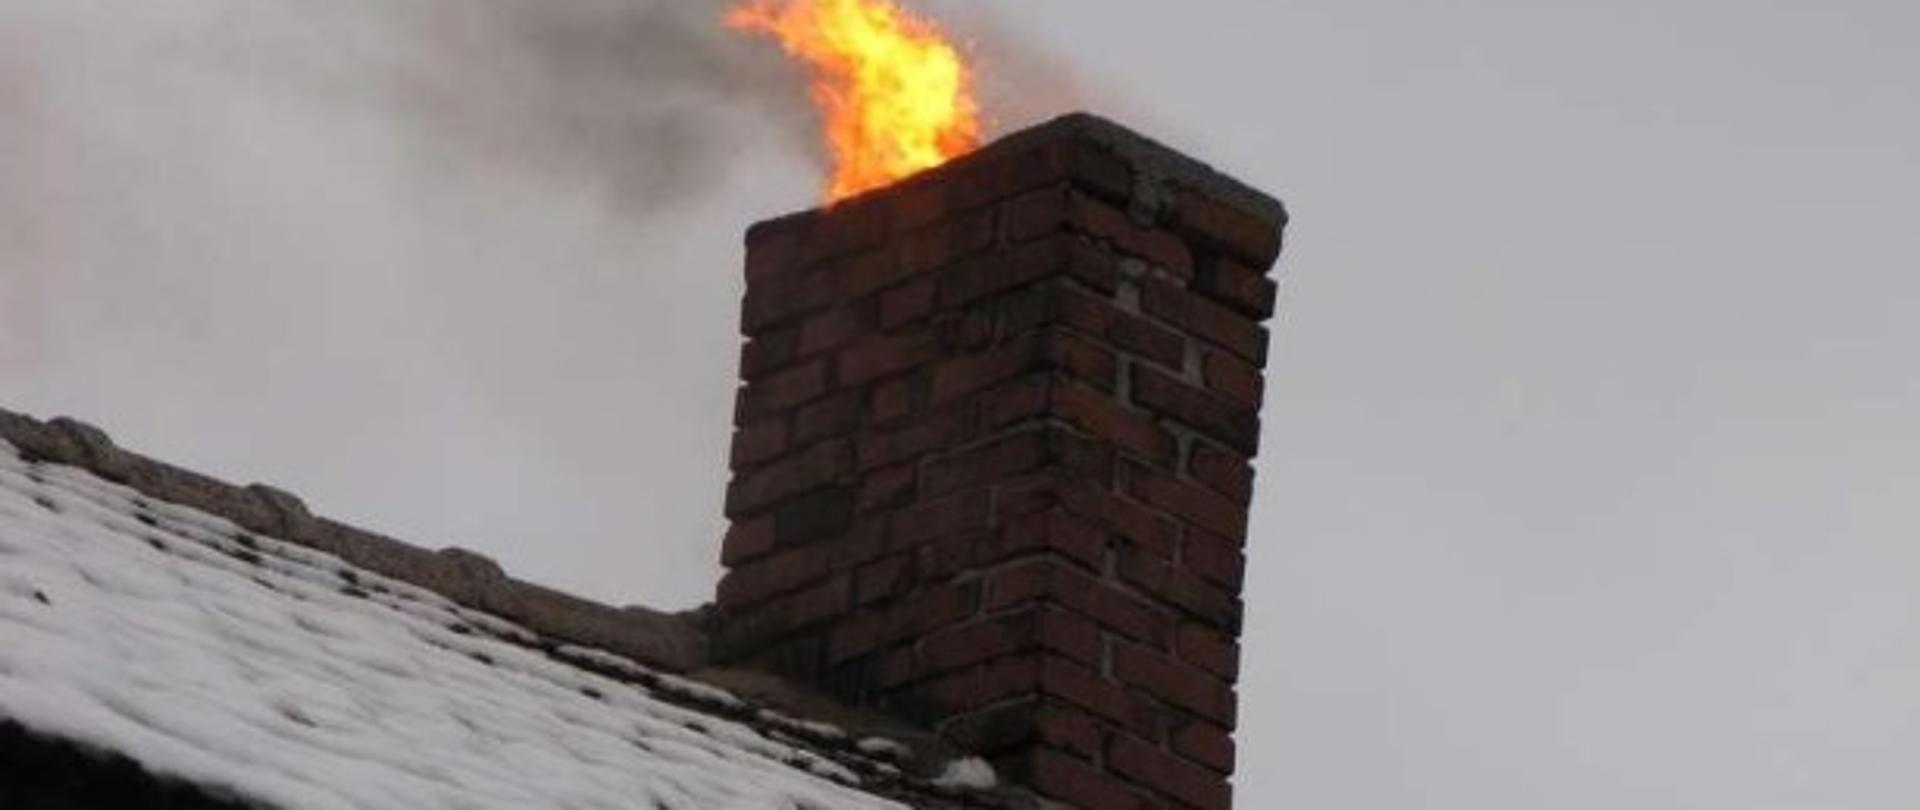 Zdjęcie przedstawia komin na dachu budynku, z którego wydobywa się ogień płonącej sadzy.